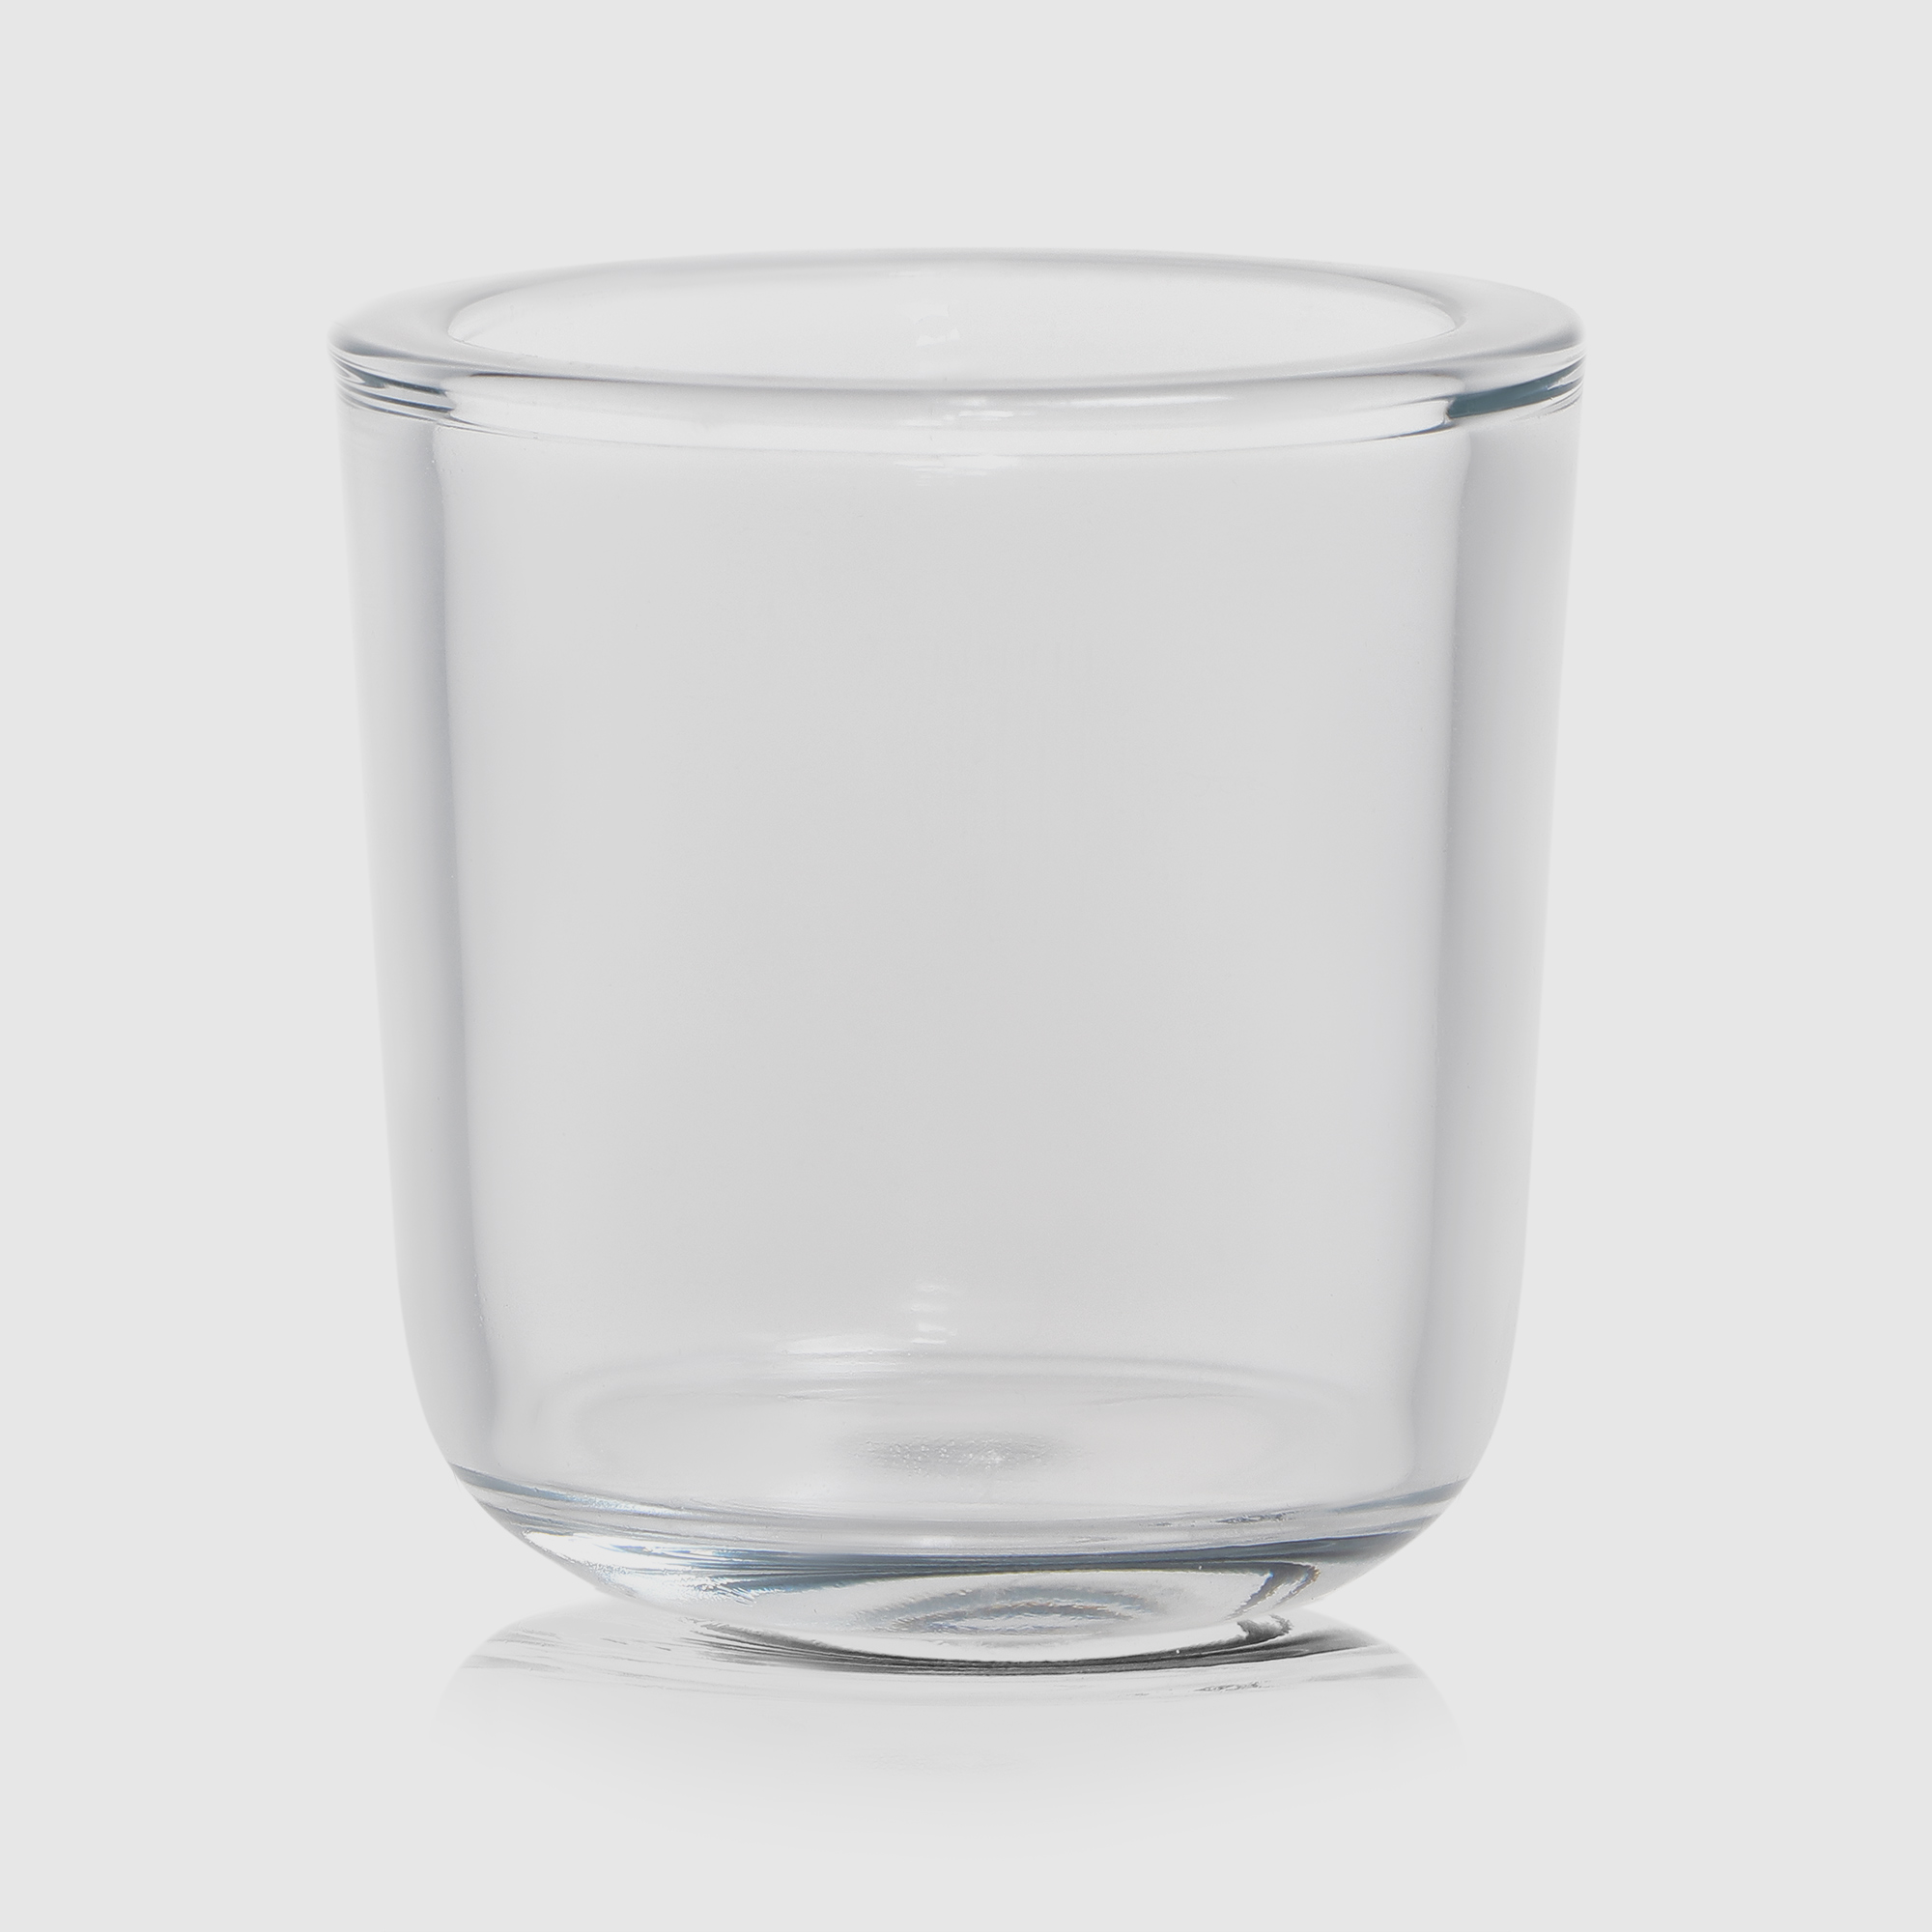 Ваза Hakbijl glass Cooper 7,5х7,5 см